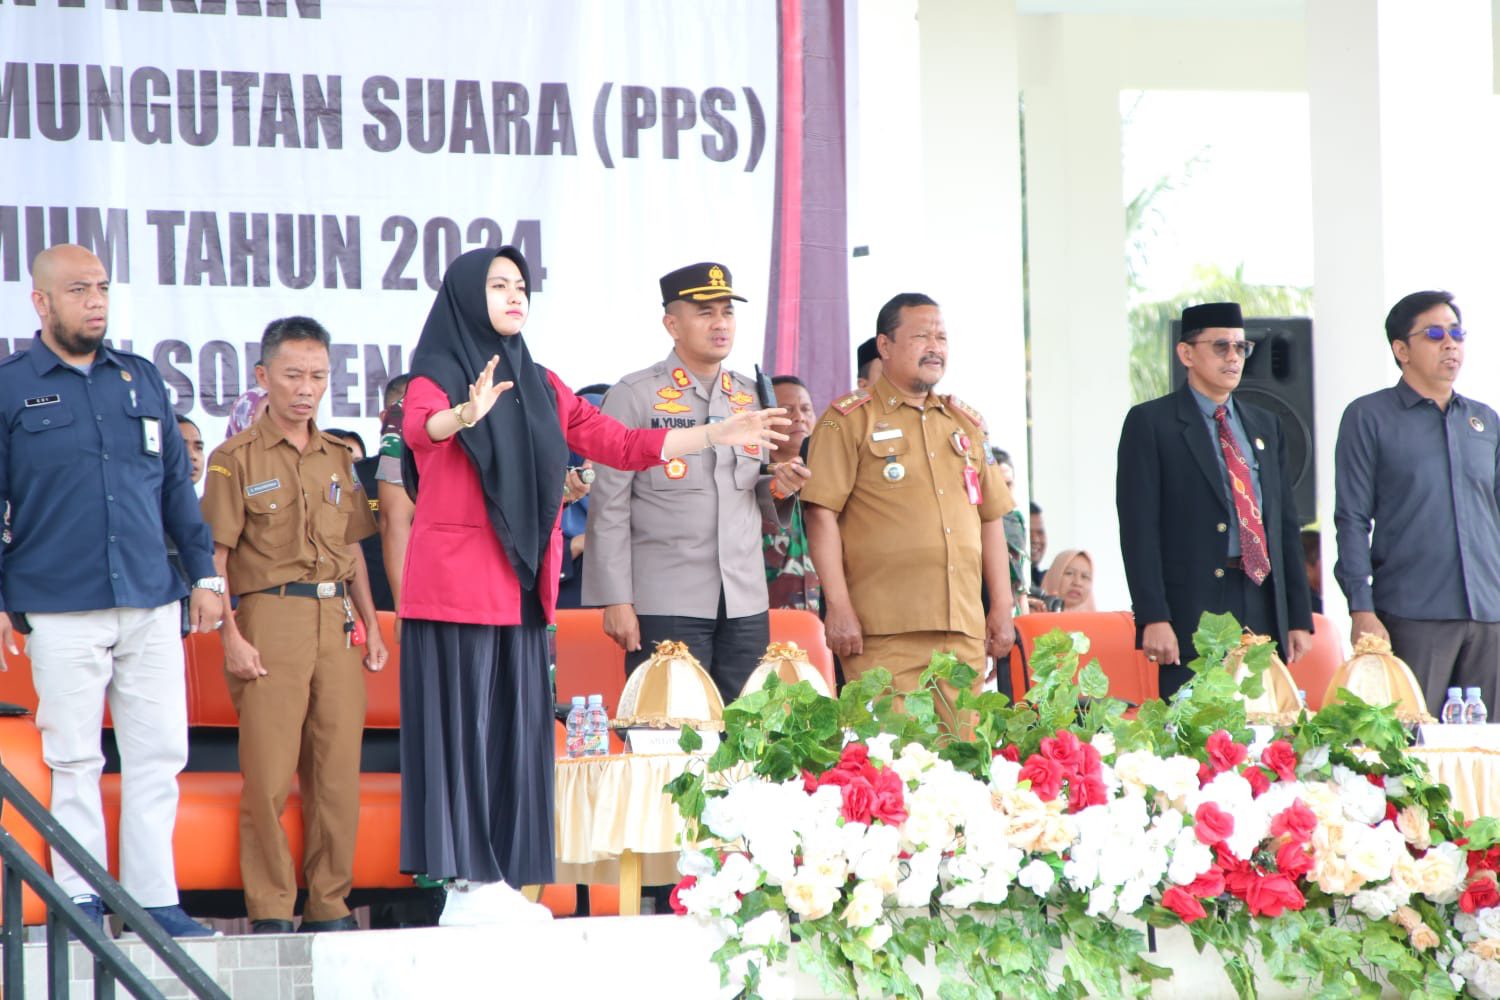 Bupati Harap 210 Anggota PPS Wujudkan Tahapan Pemilu 2024 yang Berkualitas